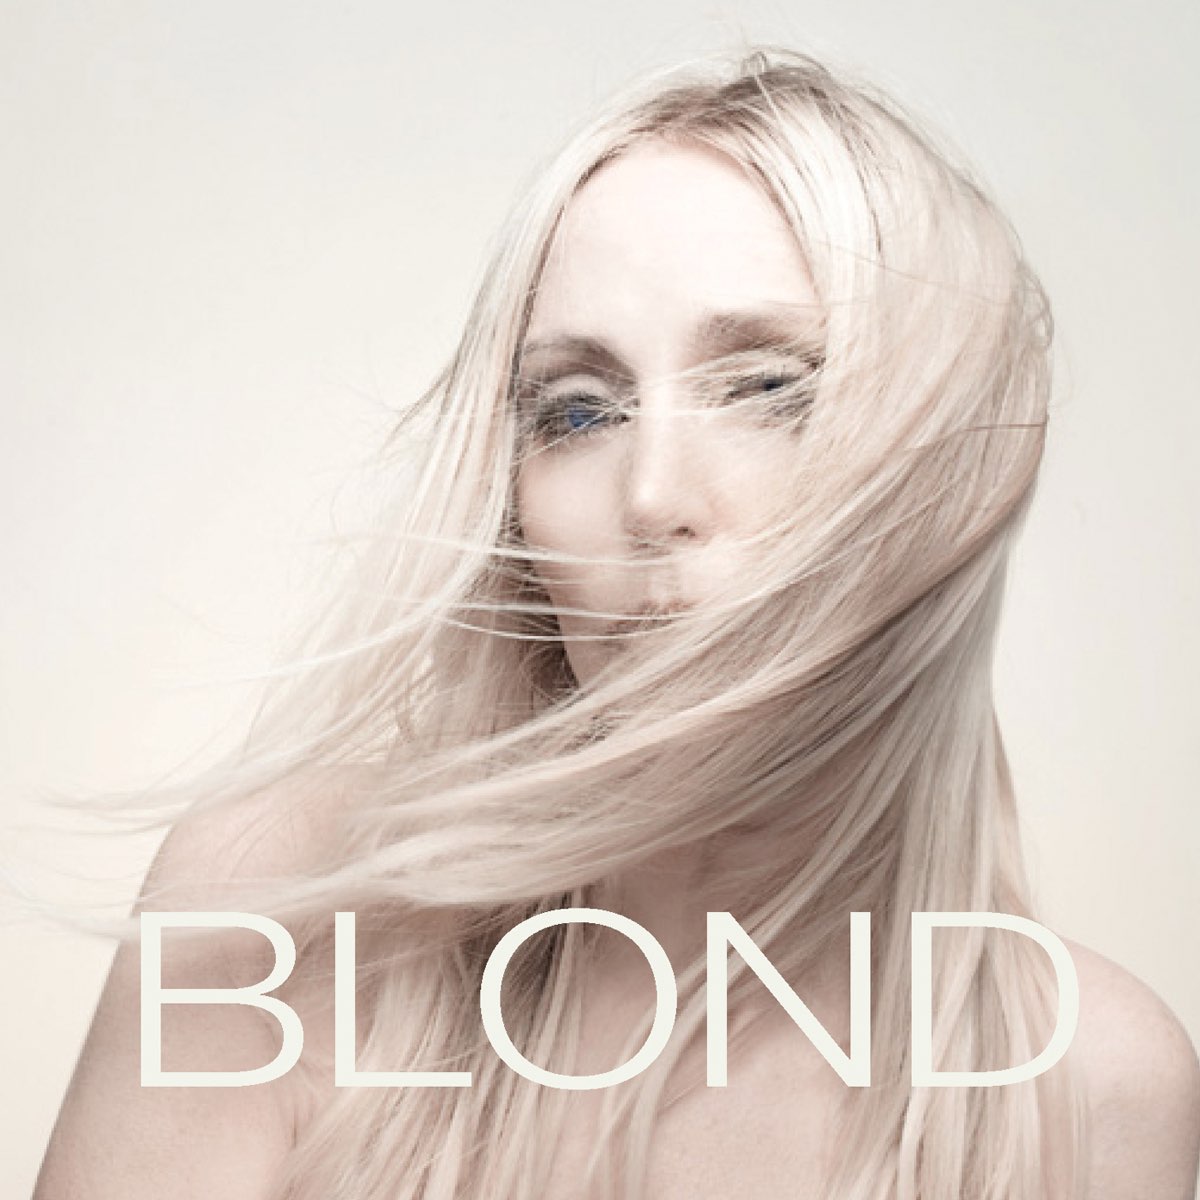 Нет тела нет дела дед блонд. Слова про блонд. Дид блонд. Dead blonde певица. Блонд на миллион.